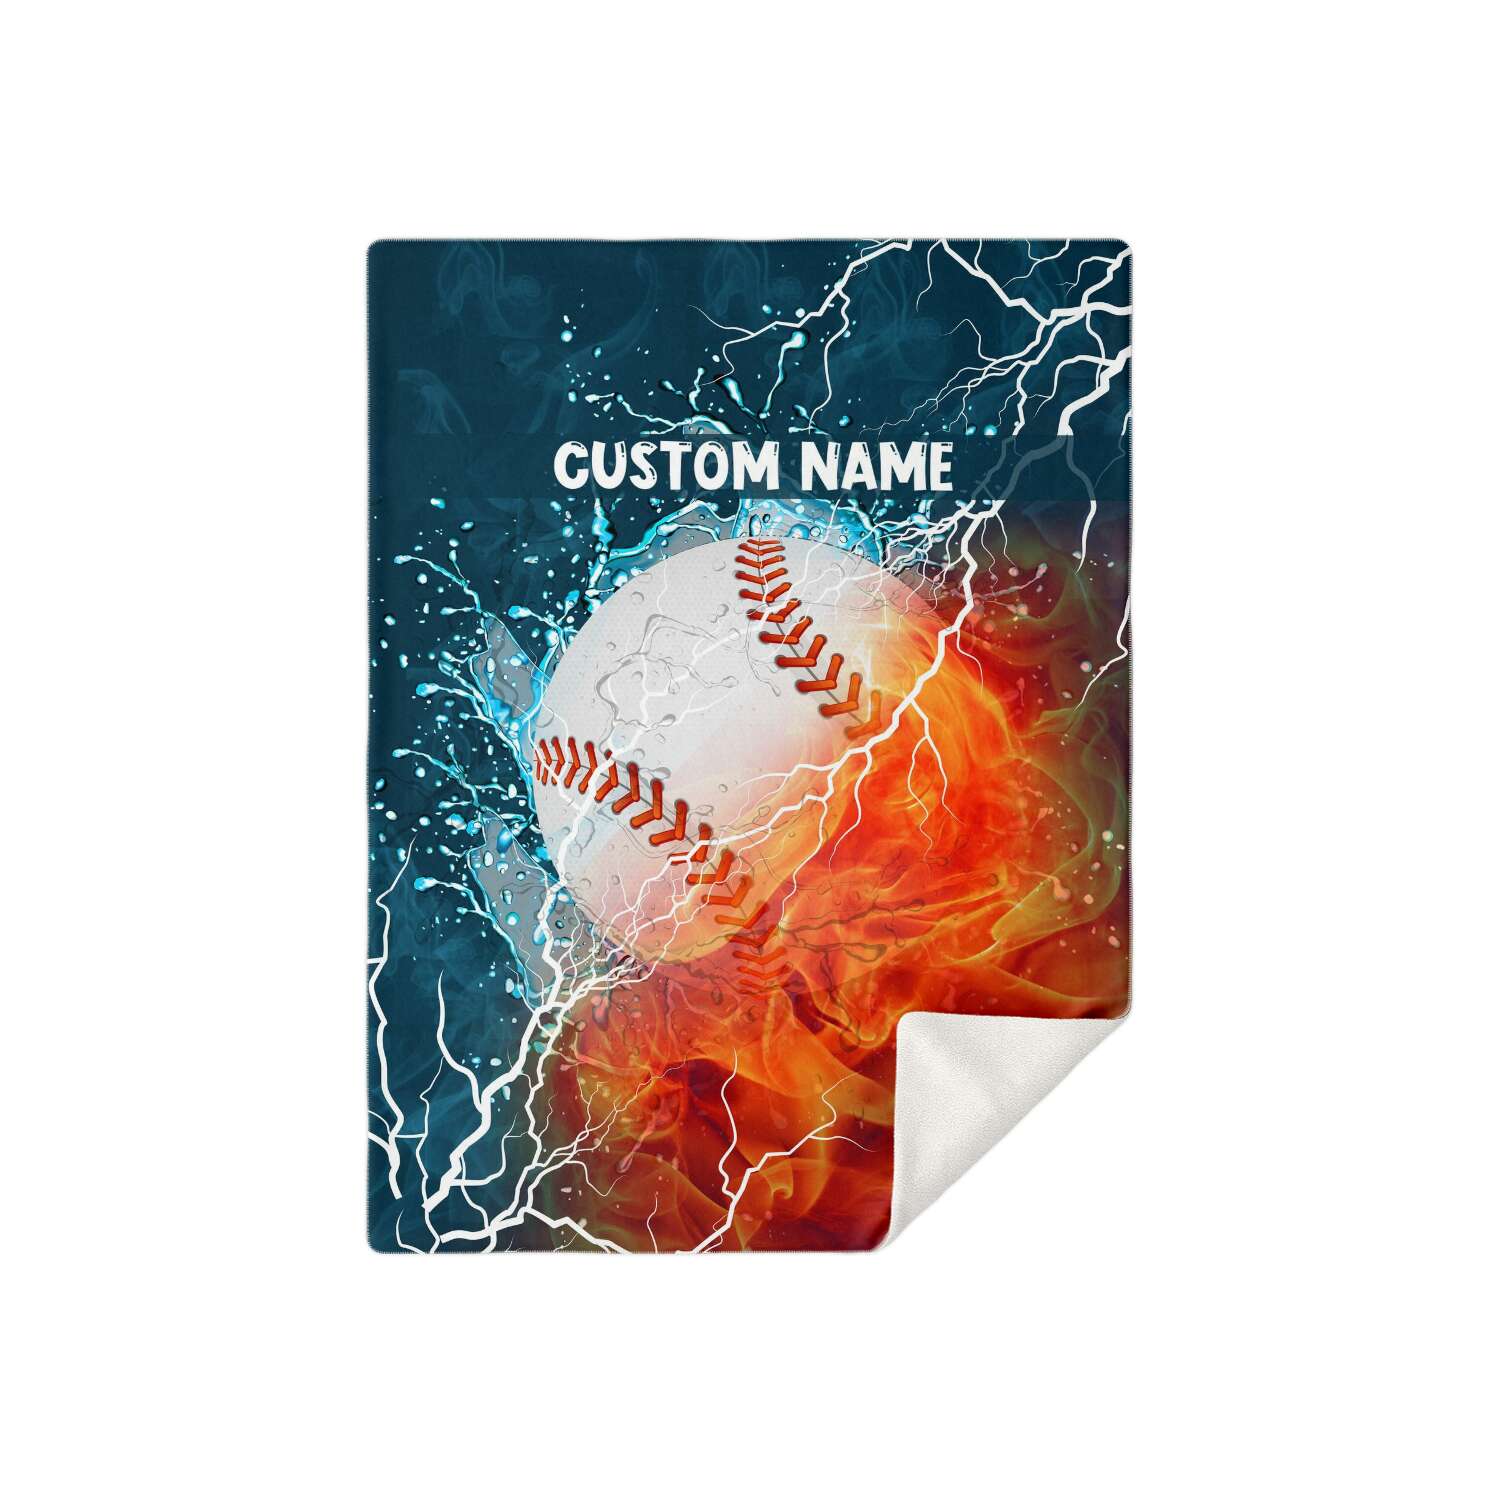 Personalized Name Baseball Blanket, Custom Name Sports Blanket for Boys & Girls